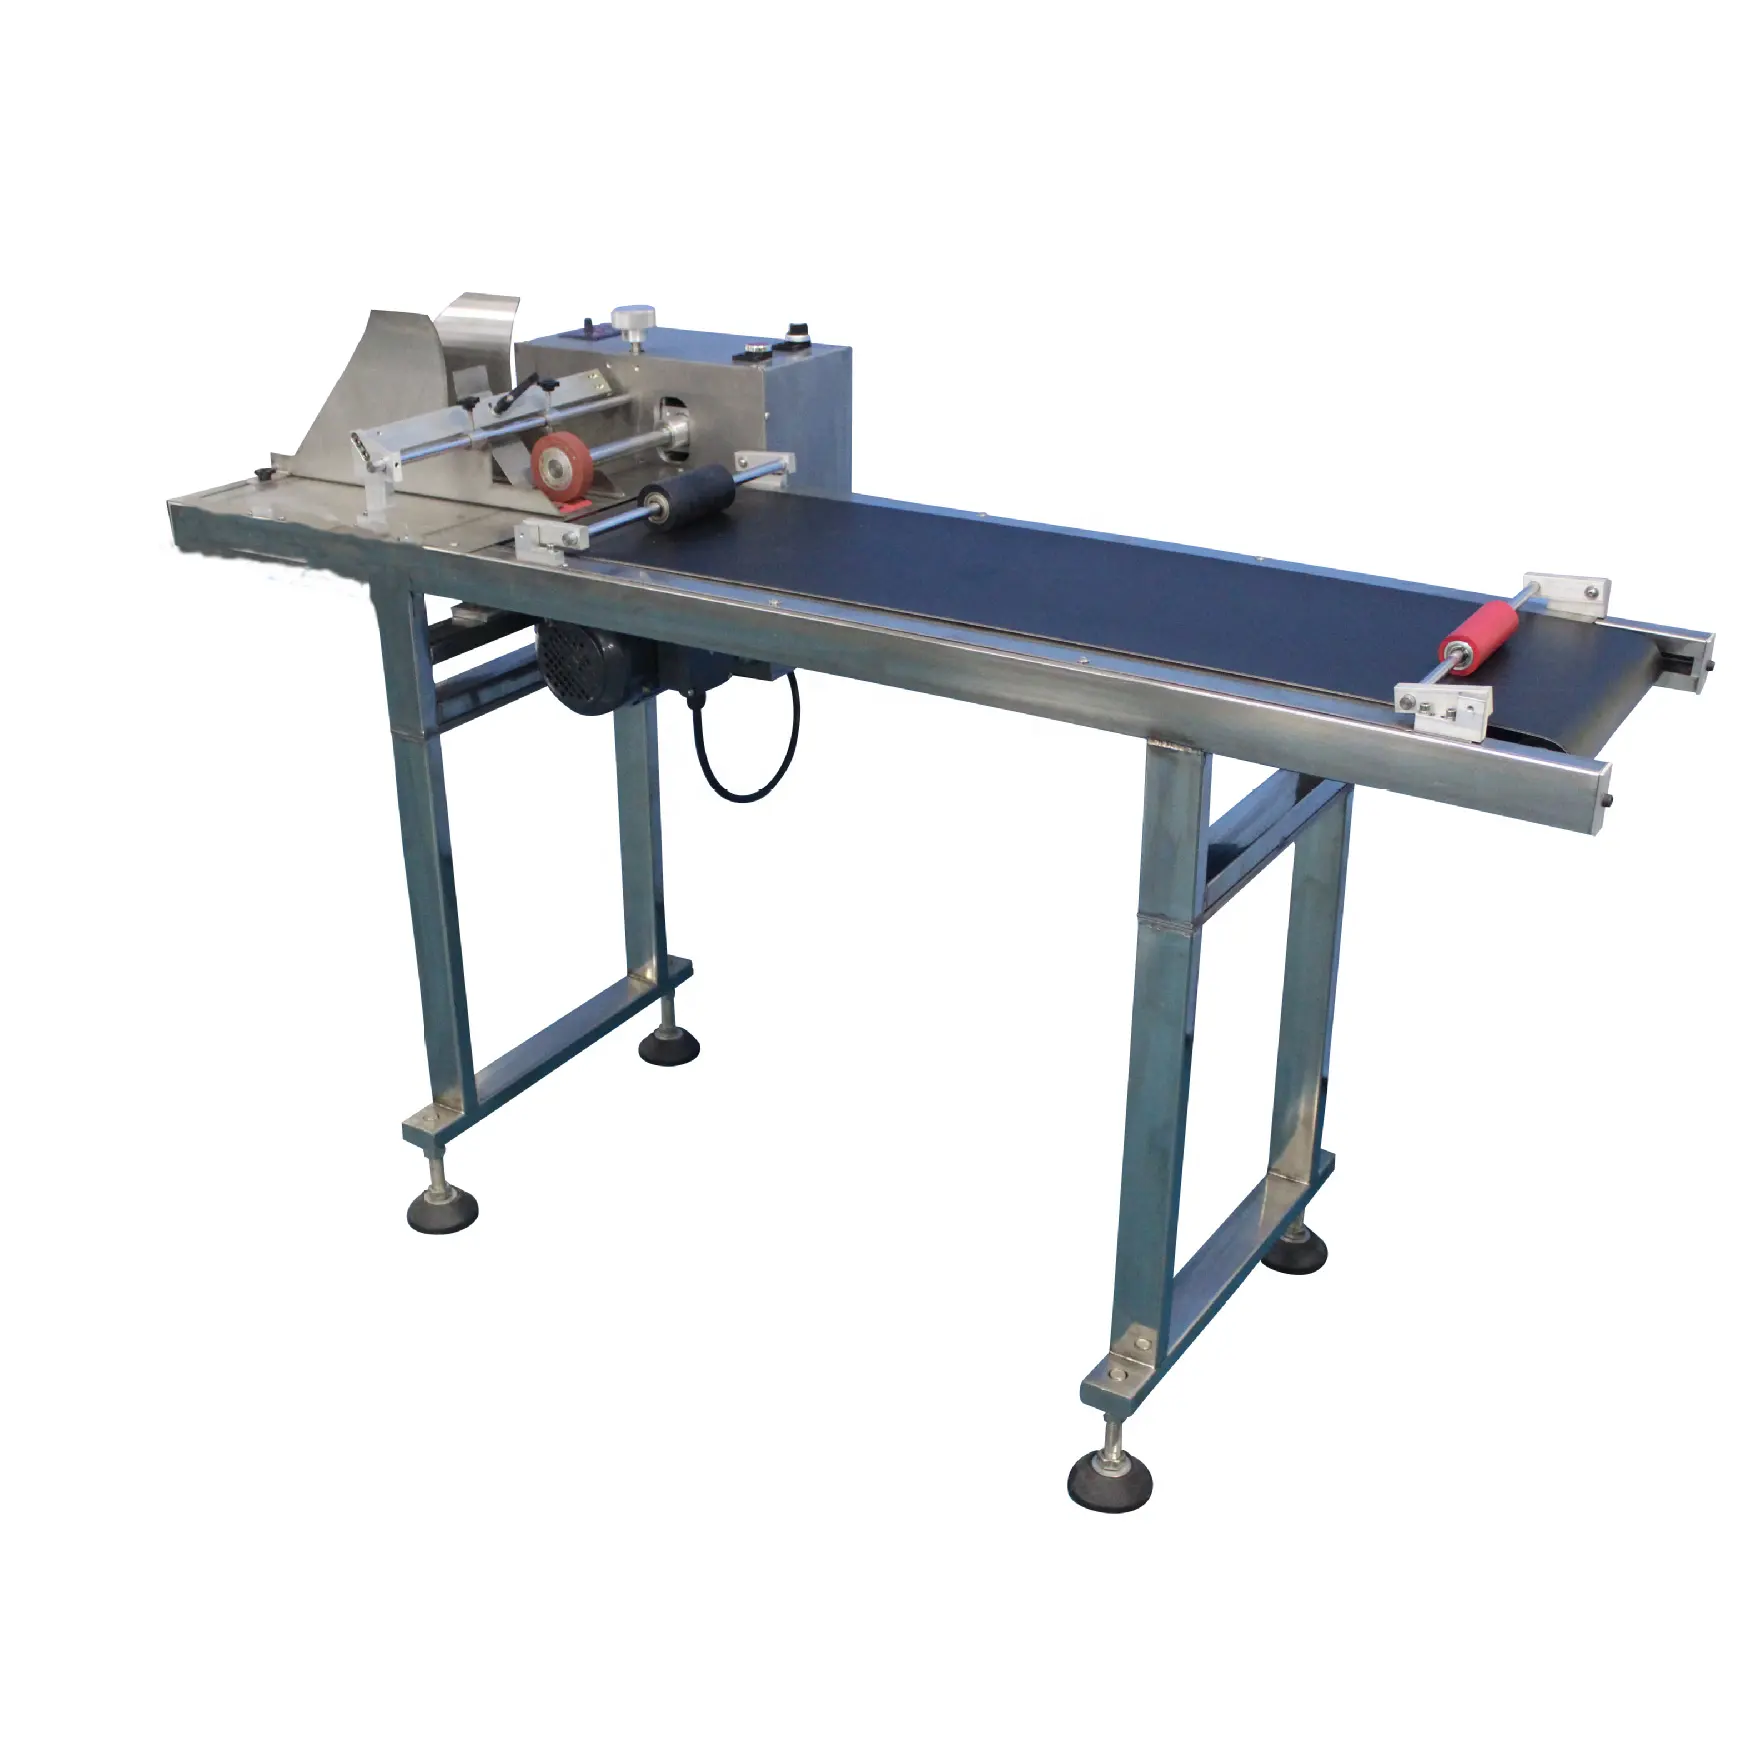 잉크젯 프린터 또는 광섬유 레이저 기계 마찰 공급기가있는 고속 페이징 및 인쇄 기계